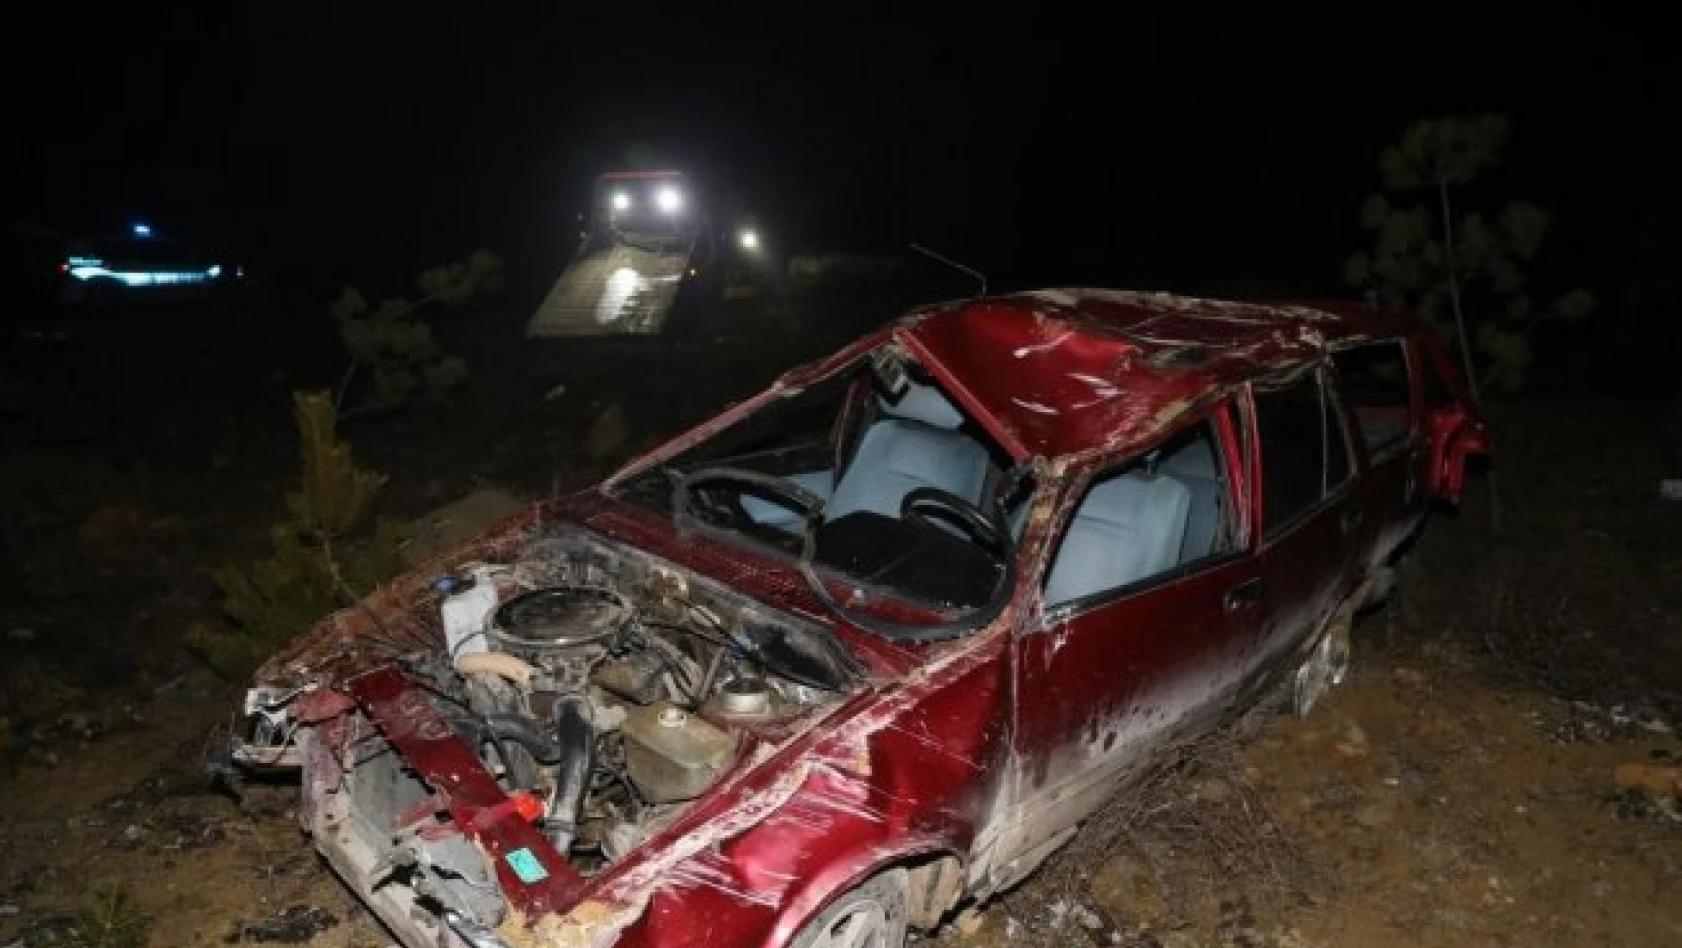 Kastamonu'da otomobil devrildi: 2 yaralı